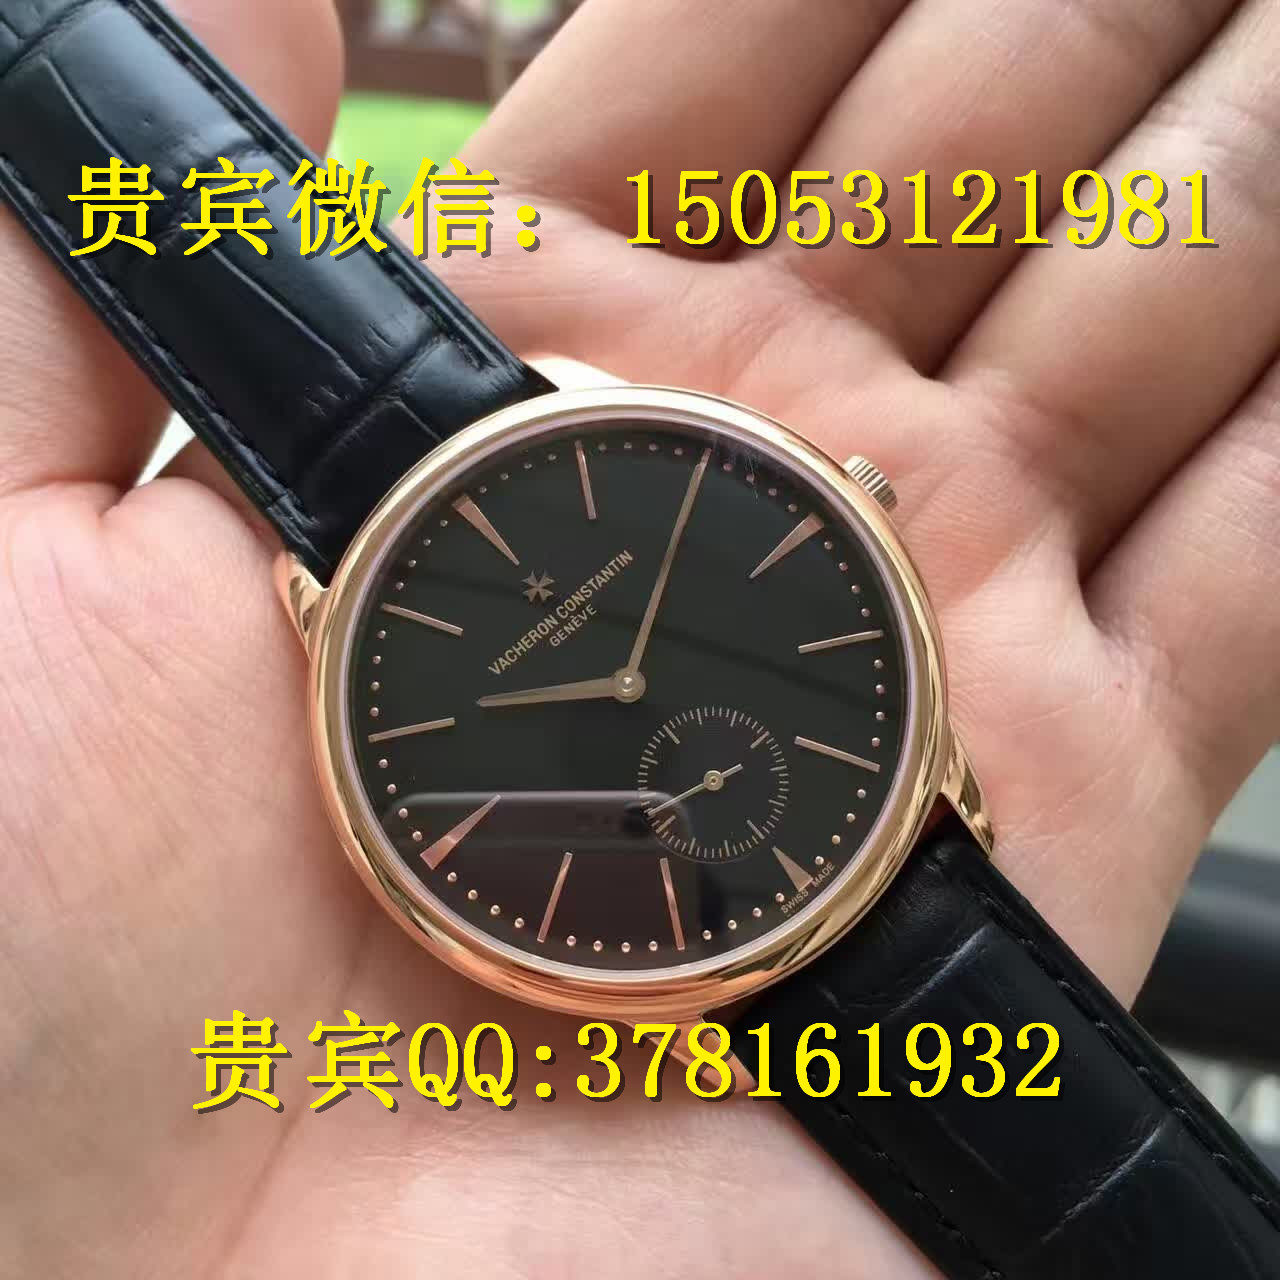 江诗丹顿机械手表价格及图片哪里有卖江诗丹顿手表的瑞士顶级名表图片